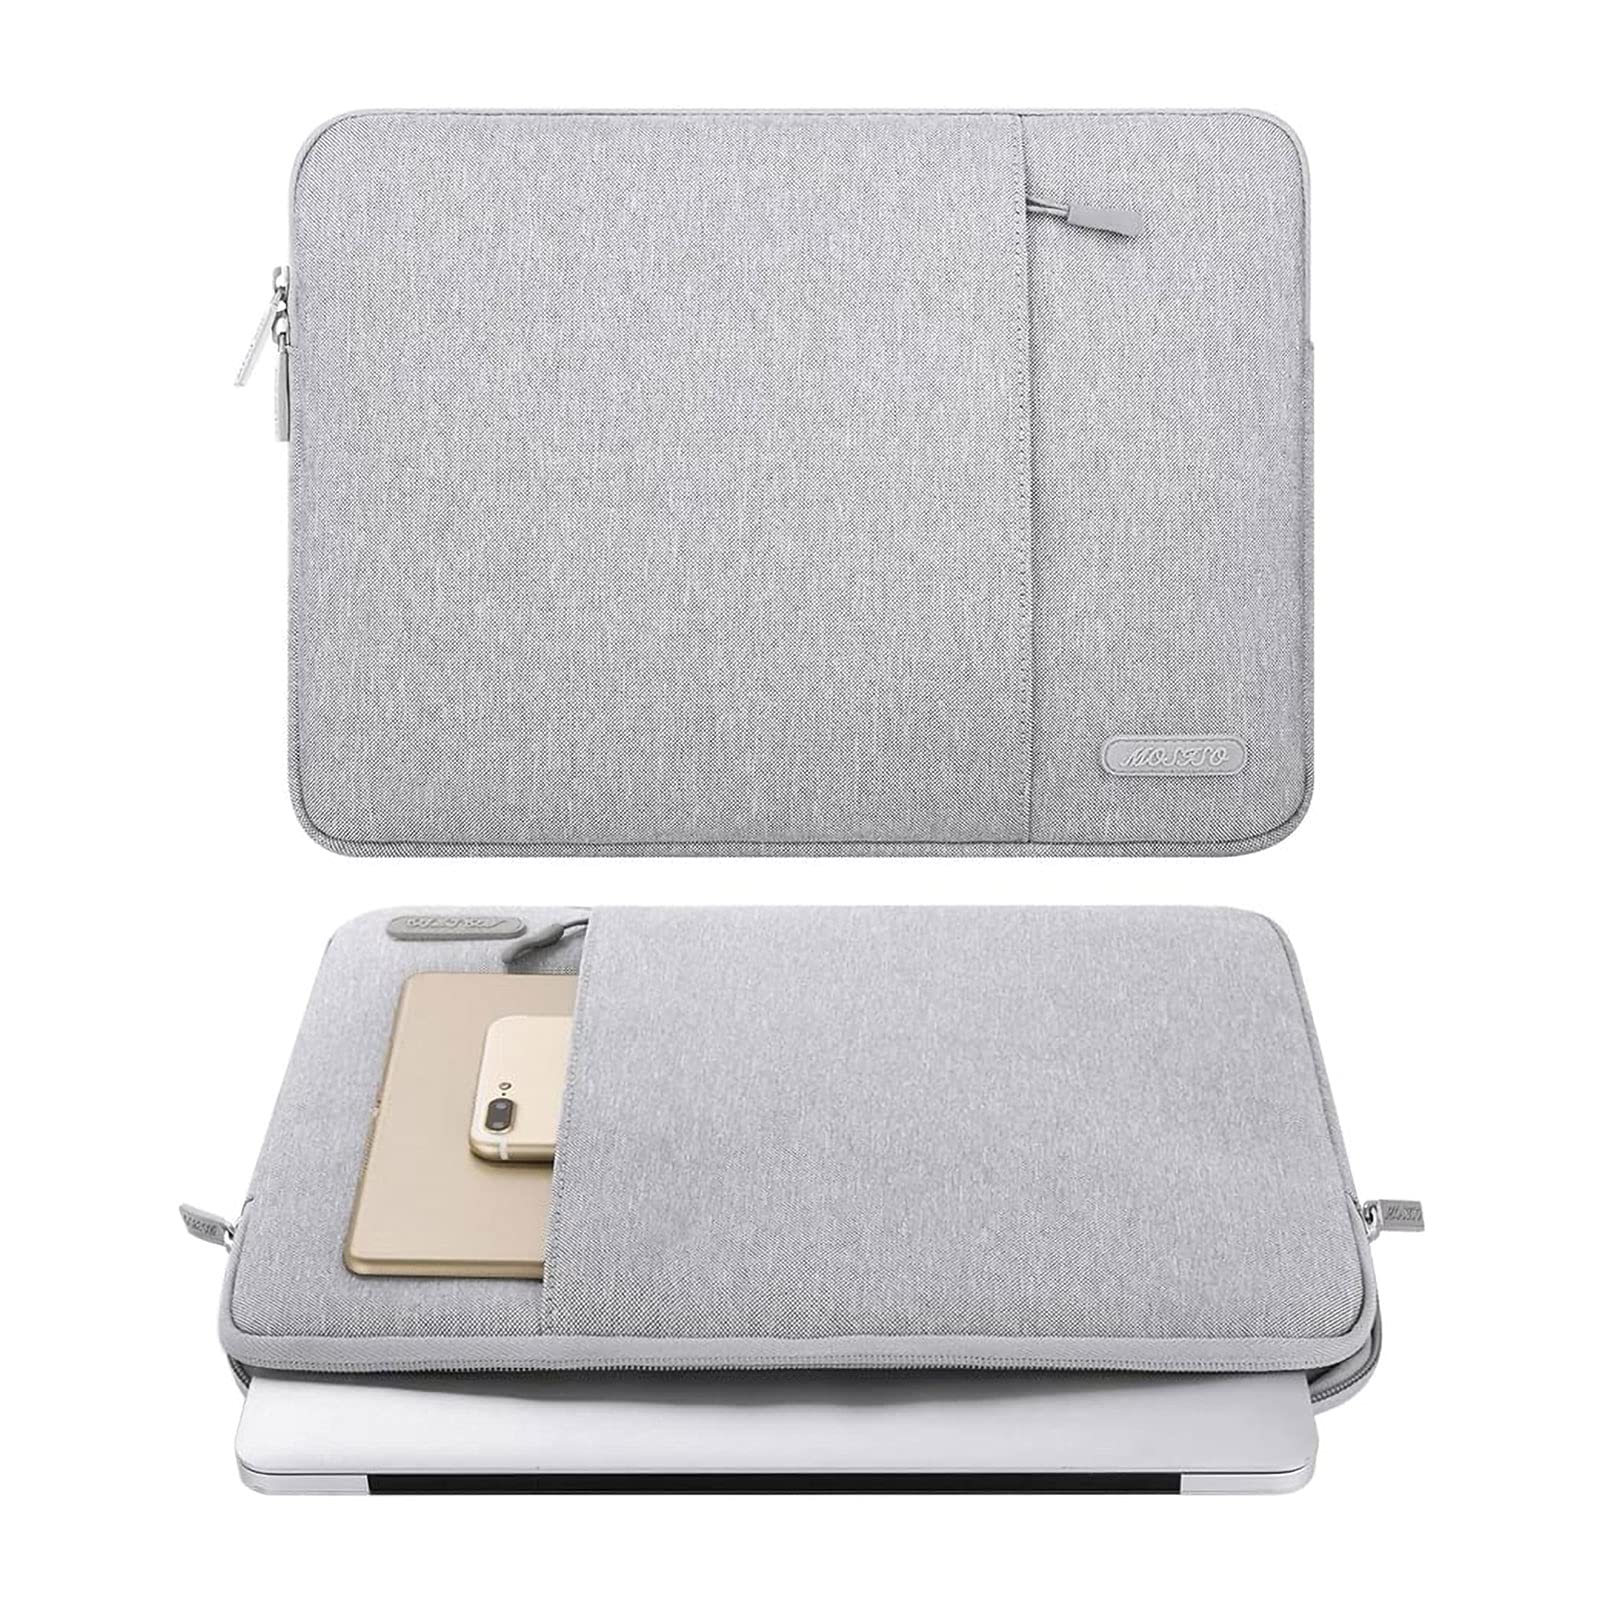 MOSISOs MacBook Air sleeve bag